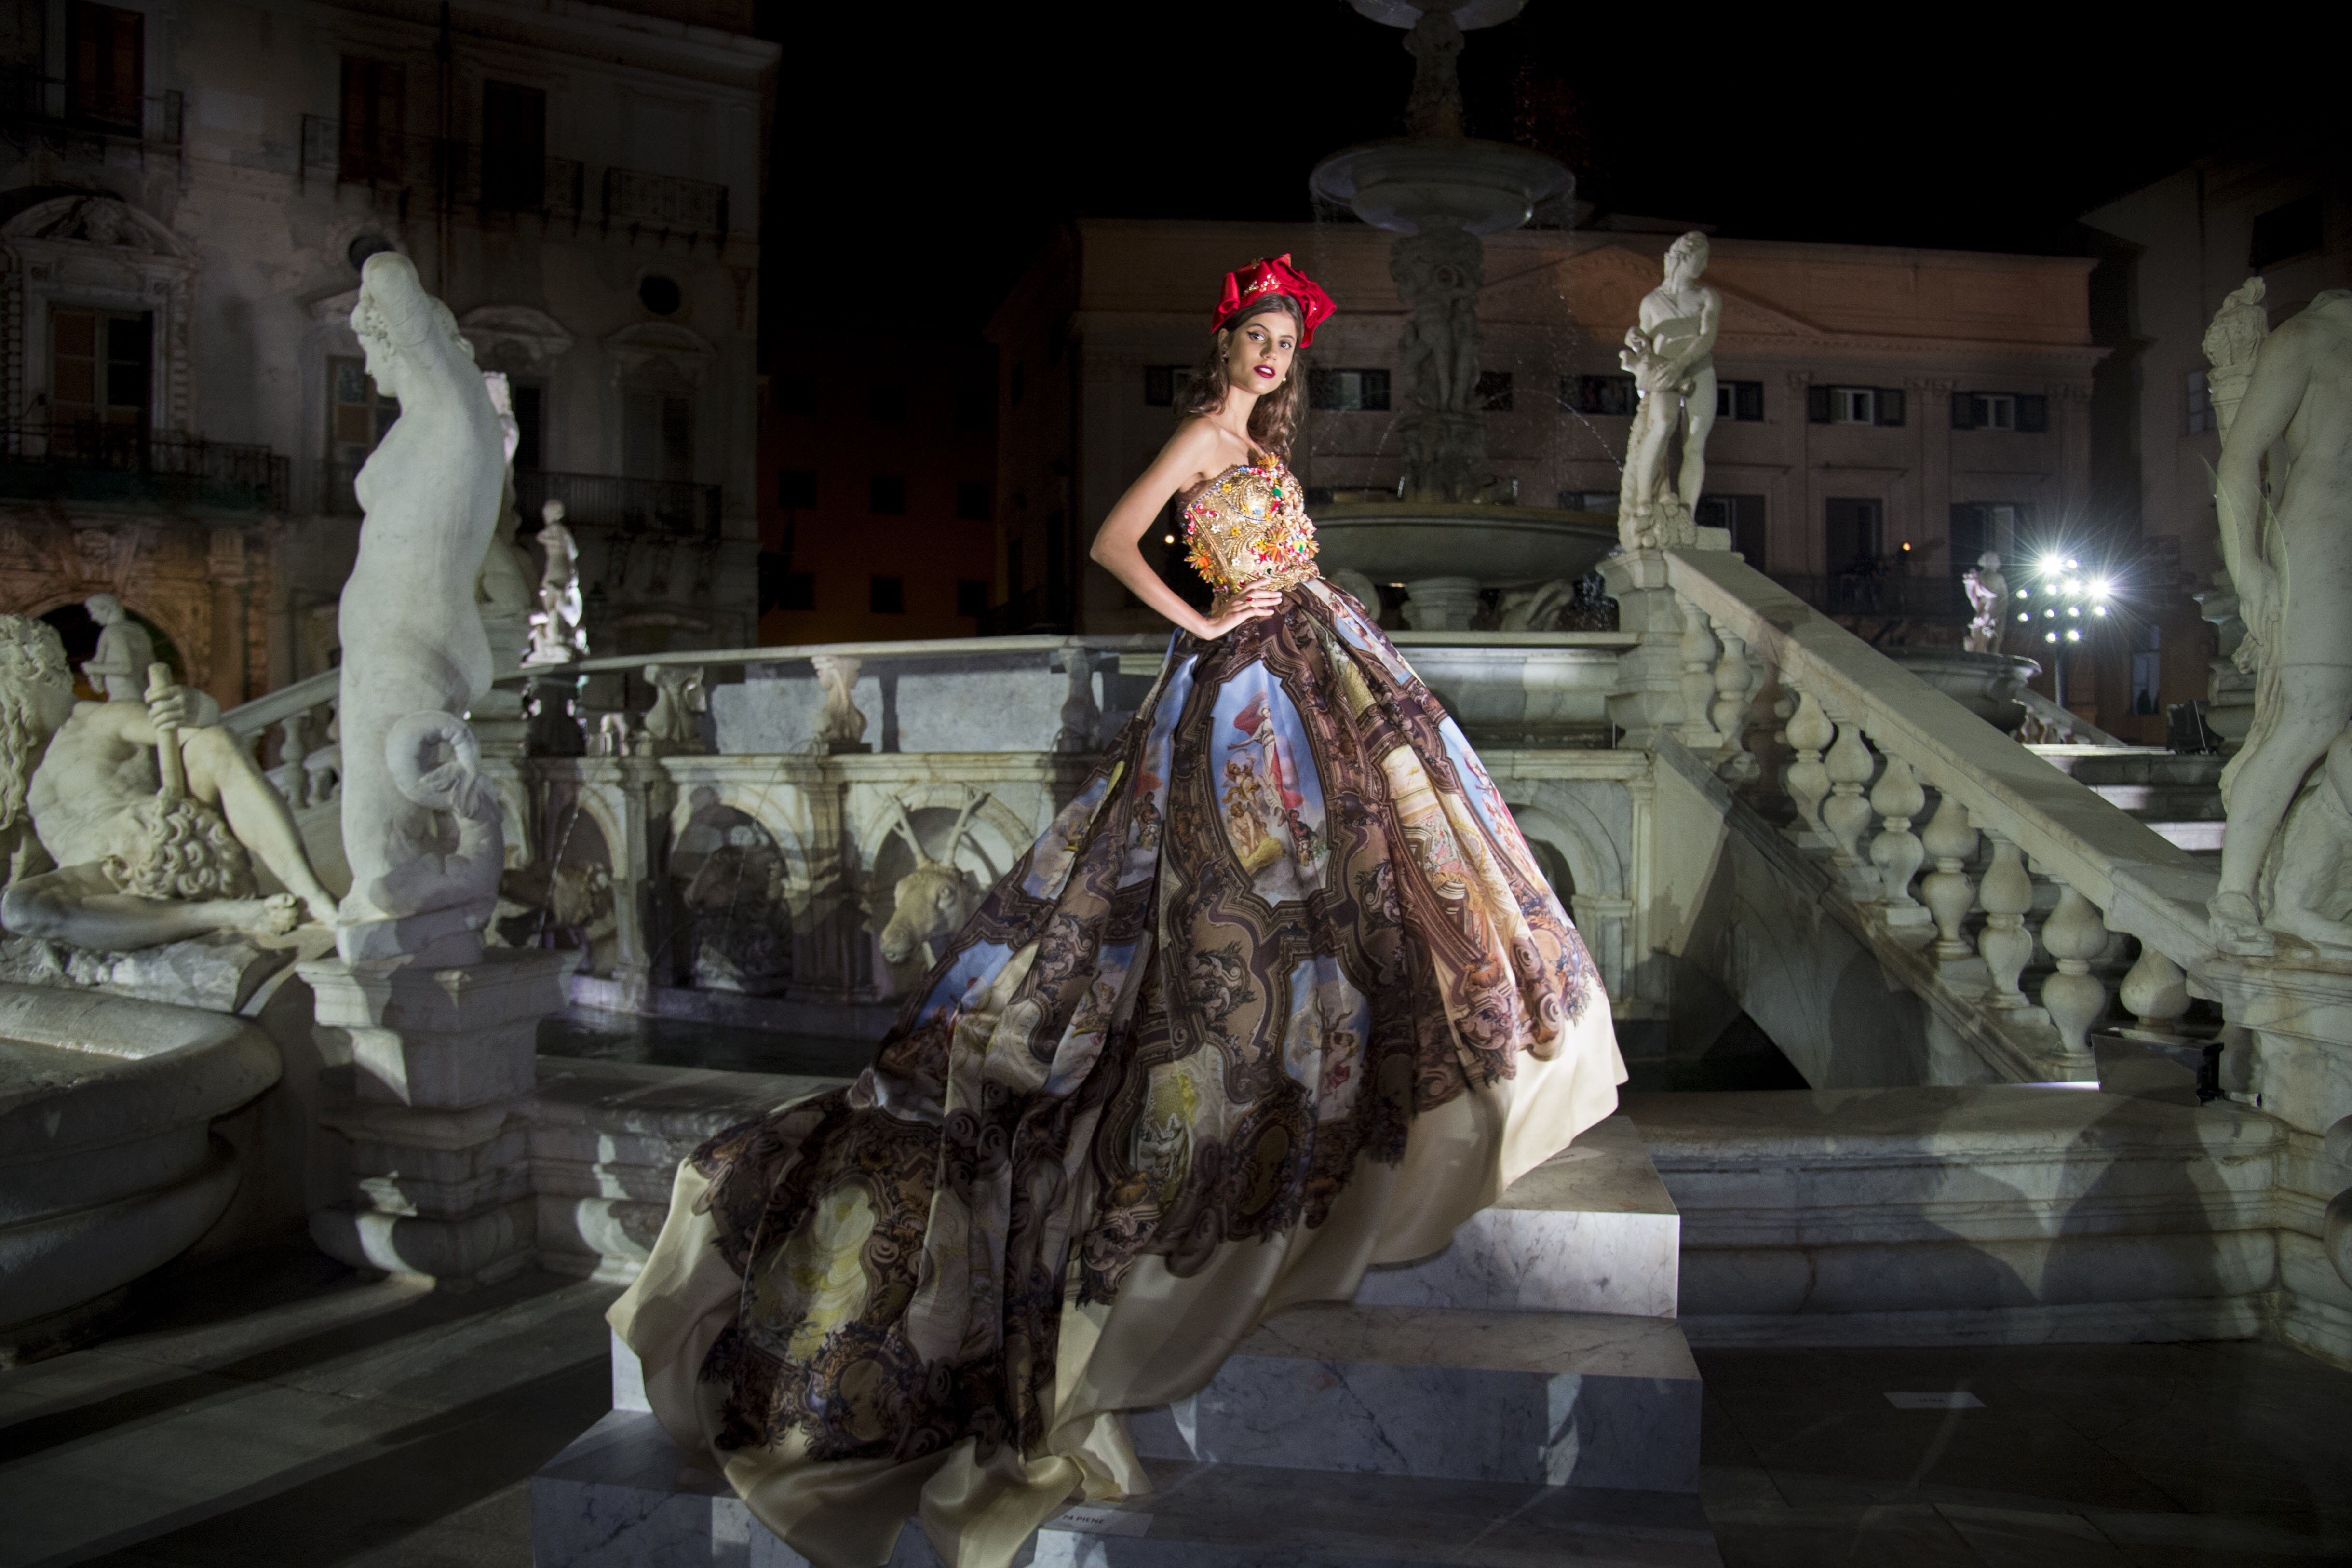 Desfile da Dolce & Gabbana, na Itália, trouxe mix de referências - Estadão